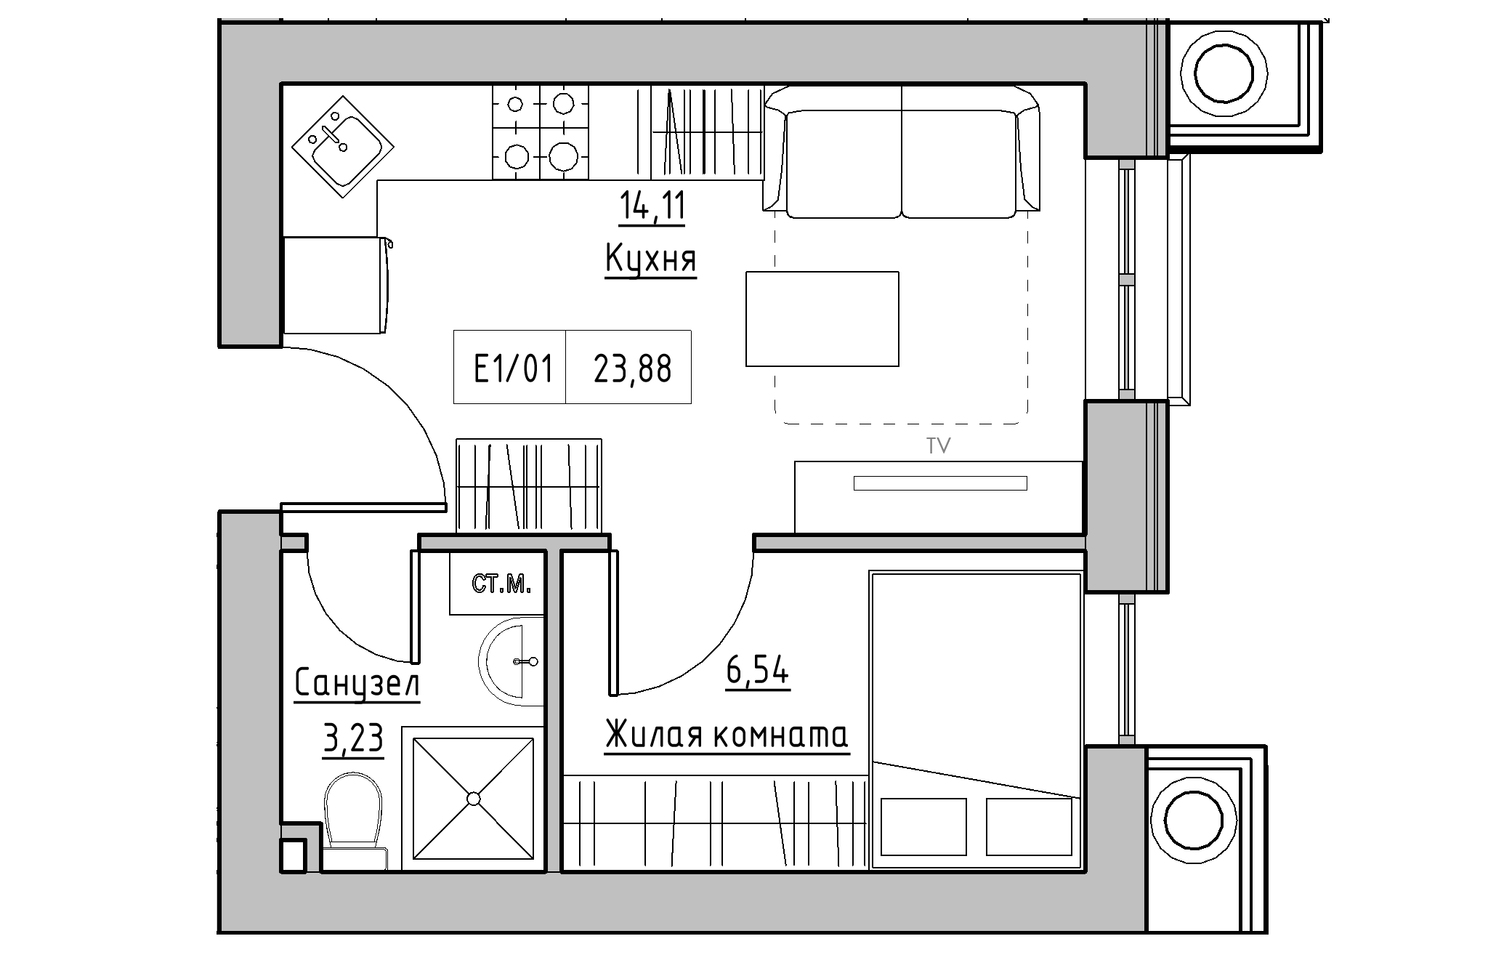 Планування 1-к квартира площею 23.88м2, KS-010-04/0011.